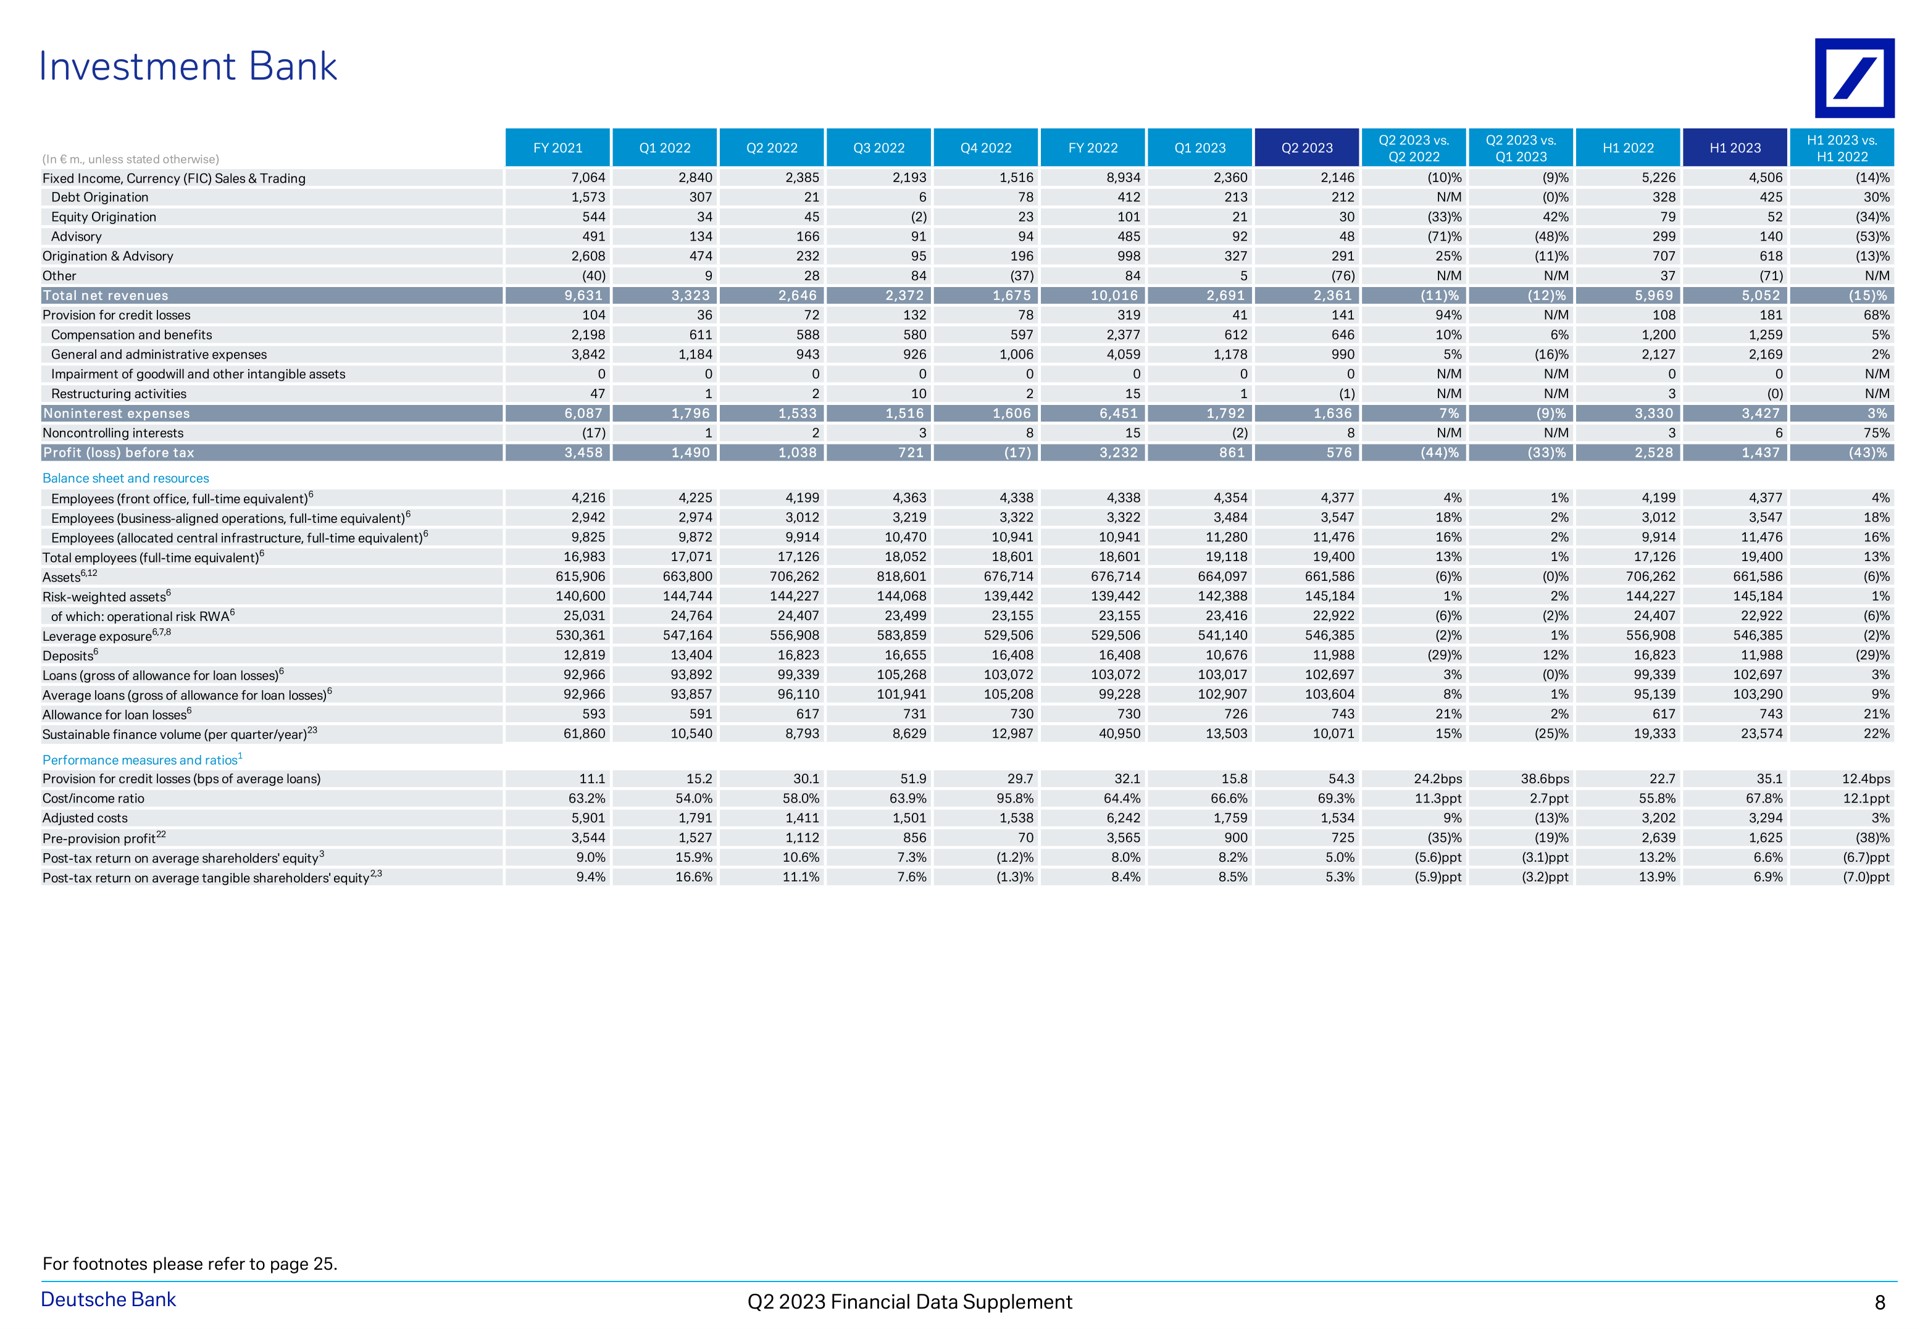 investment bank a a a tea financial data supplement | Deutsche Bank